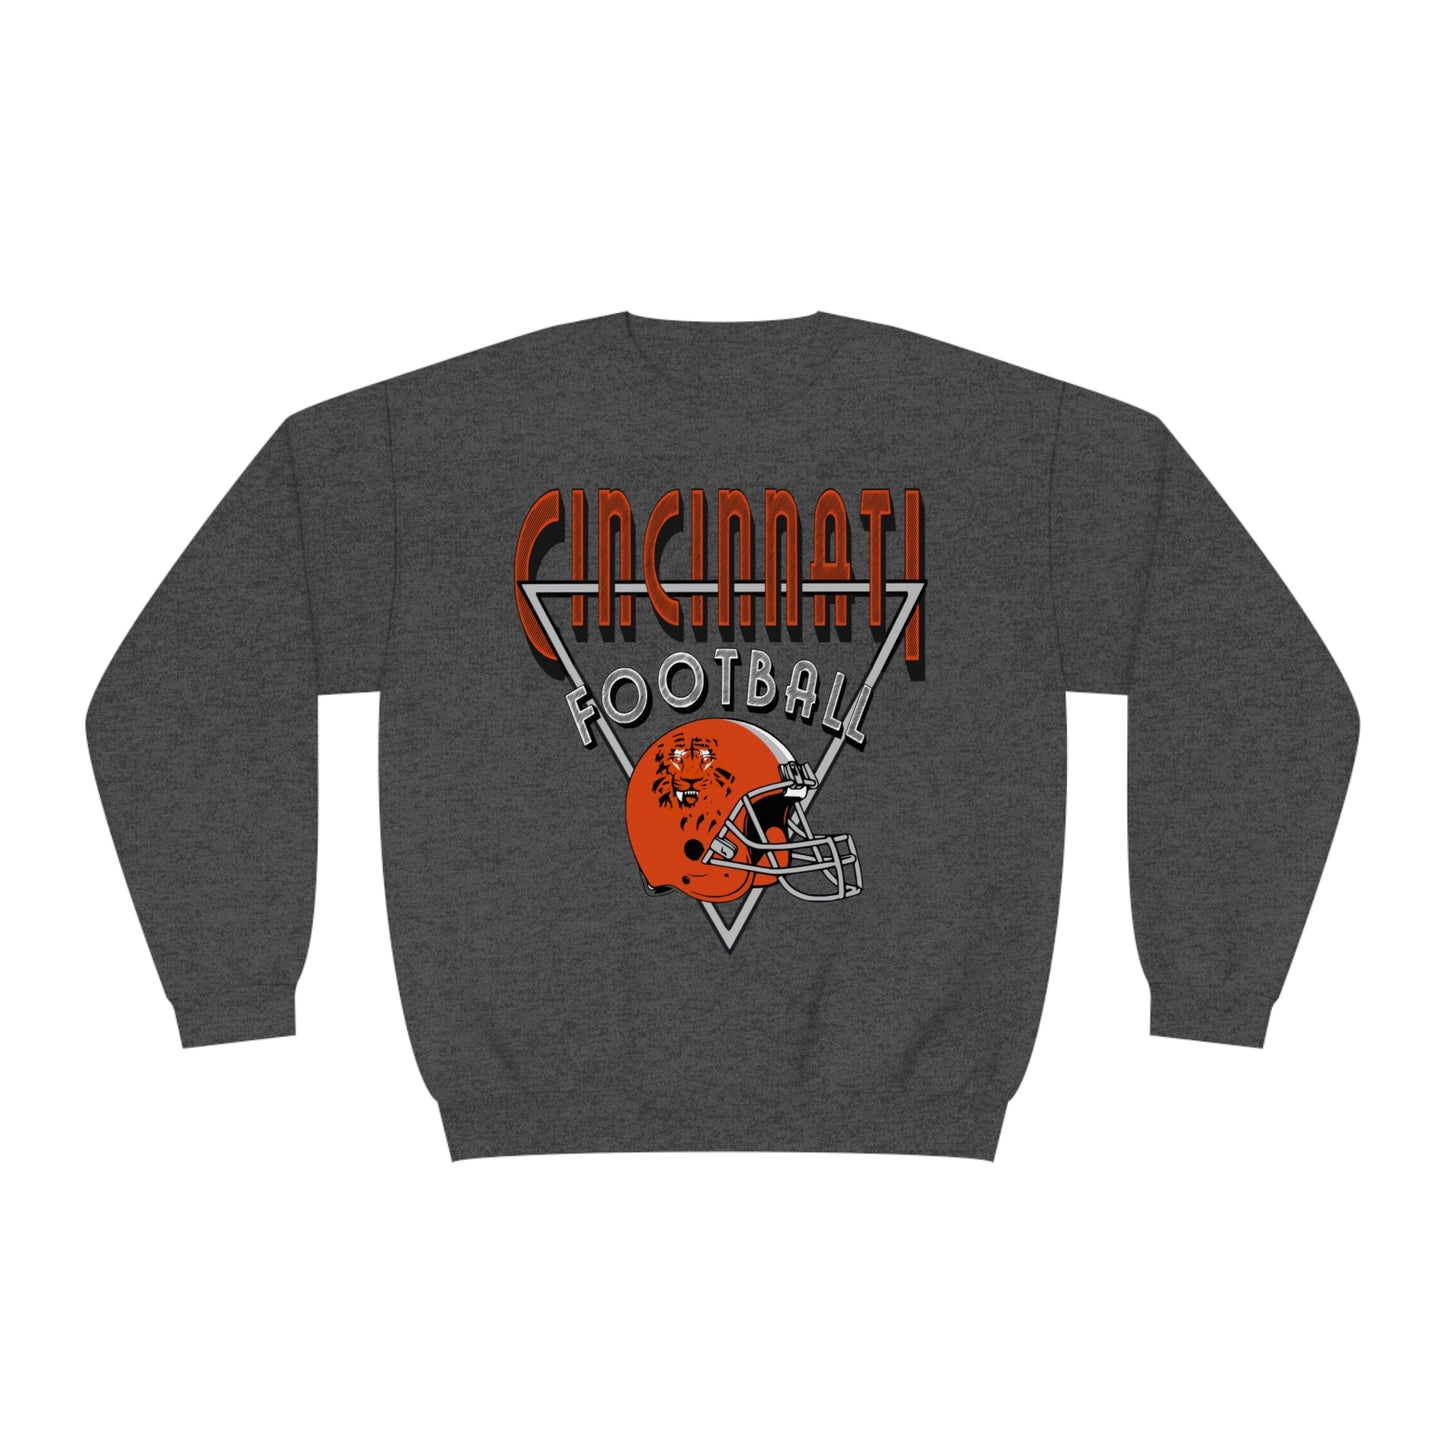 Vintage Cincinnati Bengals Crewneck Sweatshirt - 90's NFL Football Hoodie - Men's & Women's 90's Oversized DARK GRAY